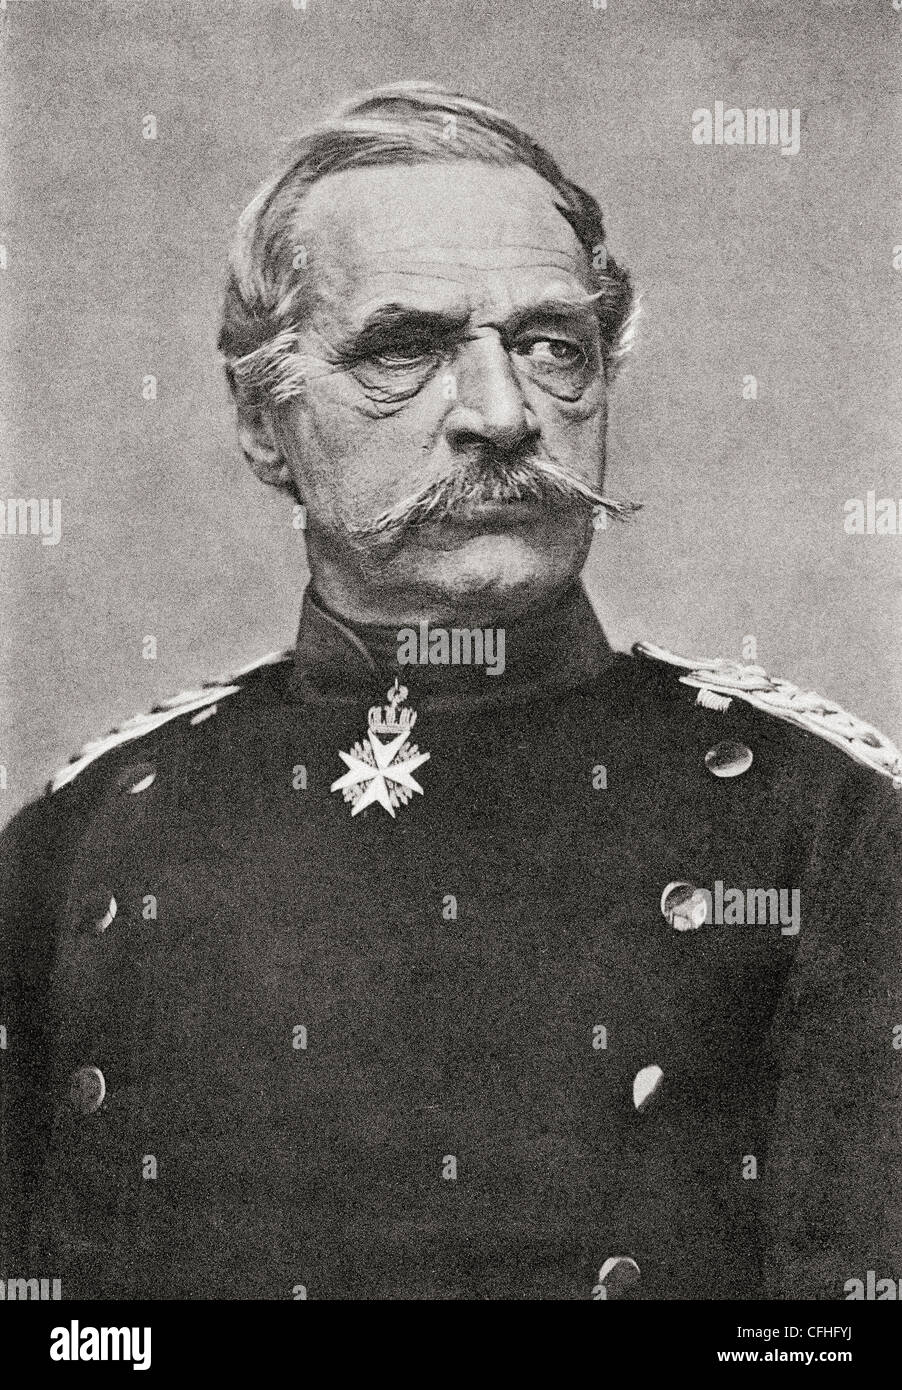 Albrecht Theodor Emil Graf von Roon, 1803 - 1879. Soldato prussiano, statista e ministro della guerra. Foto Stock